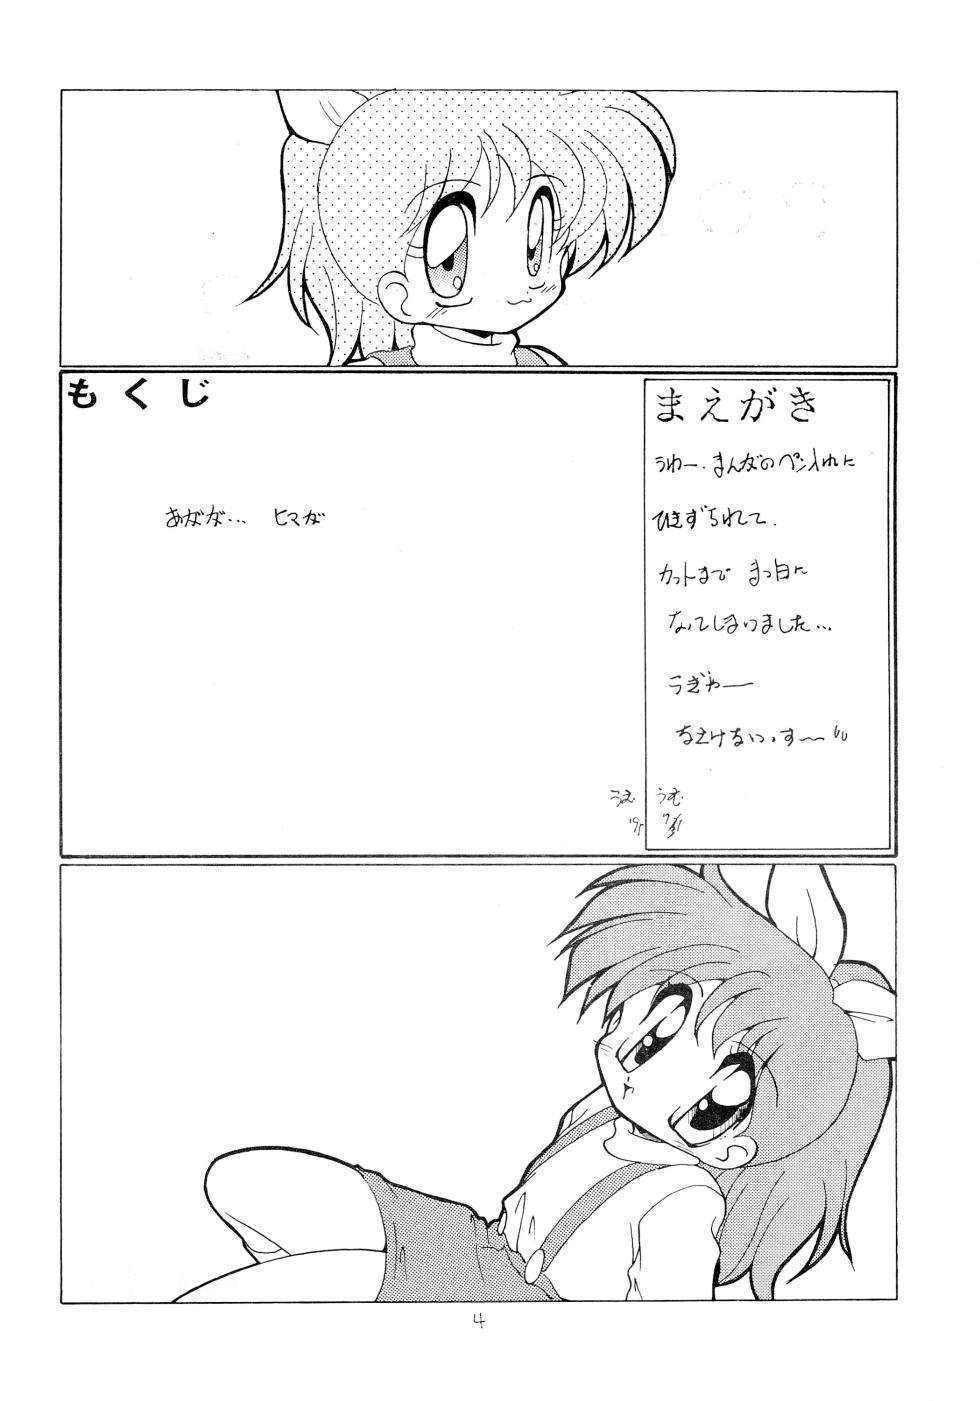 [jamneko’s (Jam Neko)] POKO Nyan 2 (Pokonyan!) - Page 4